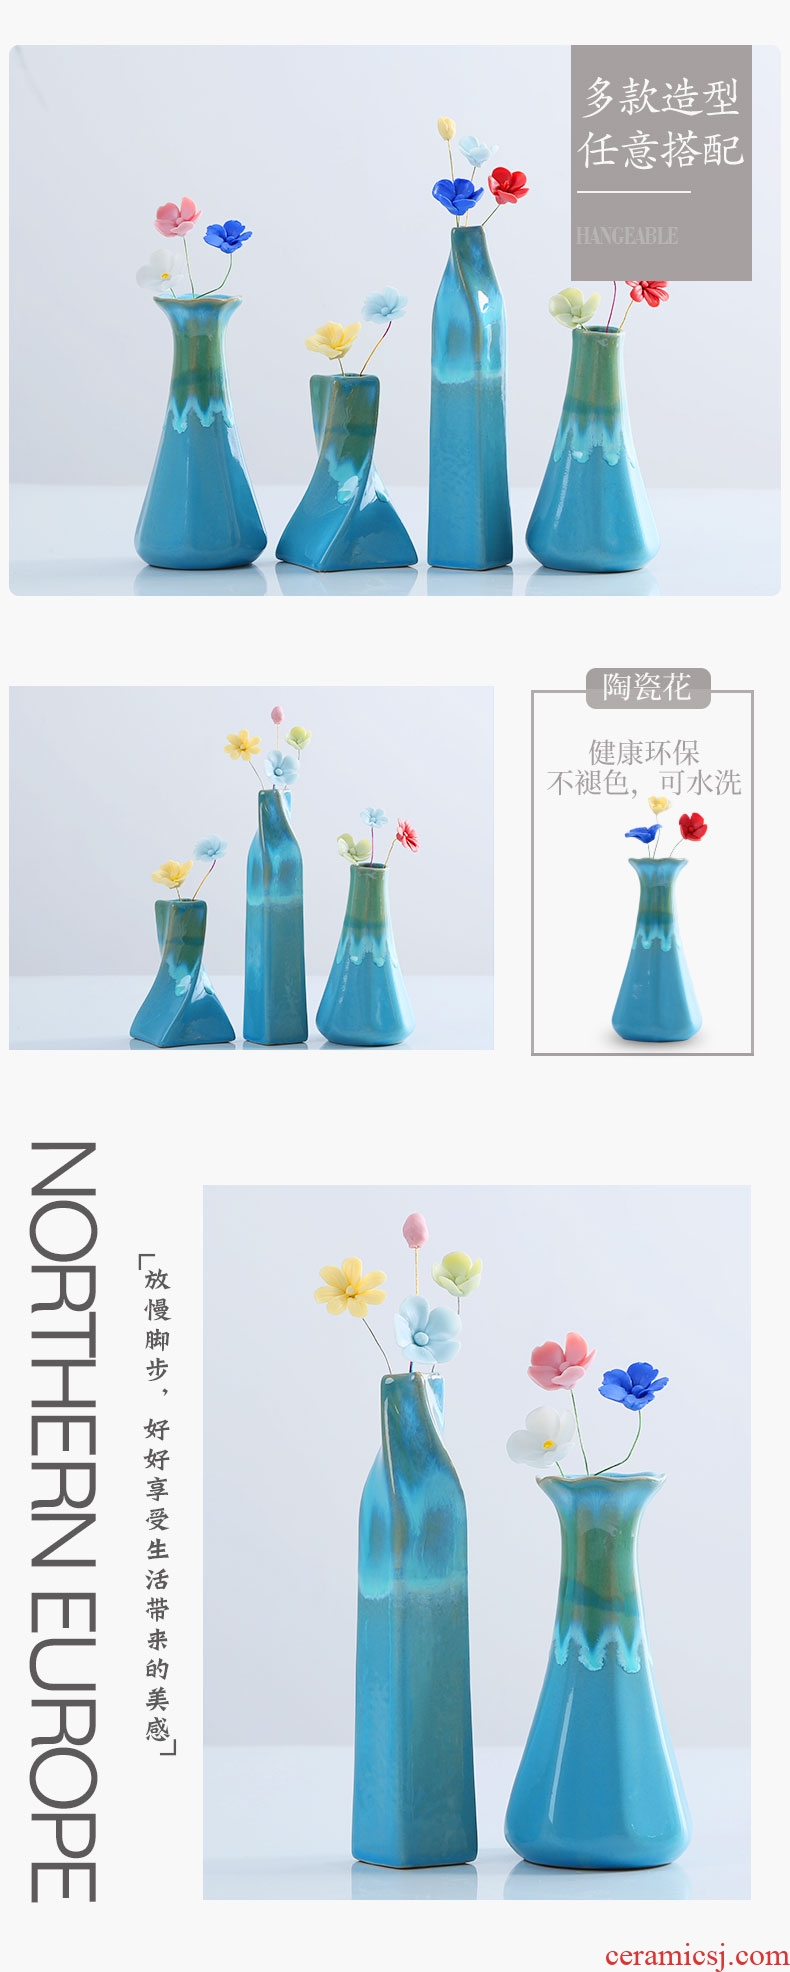 蓝色花瓶详情页-切片_05.jpg